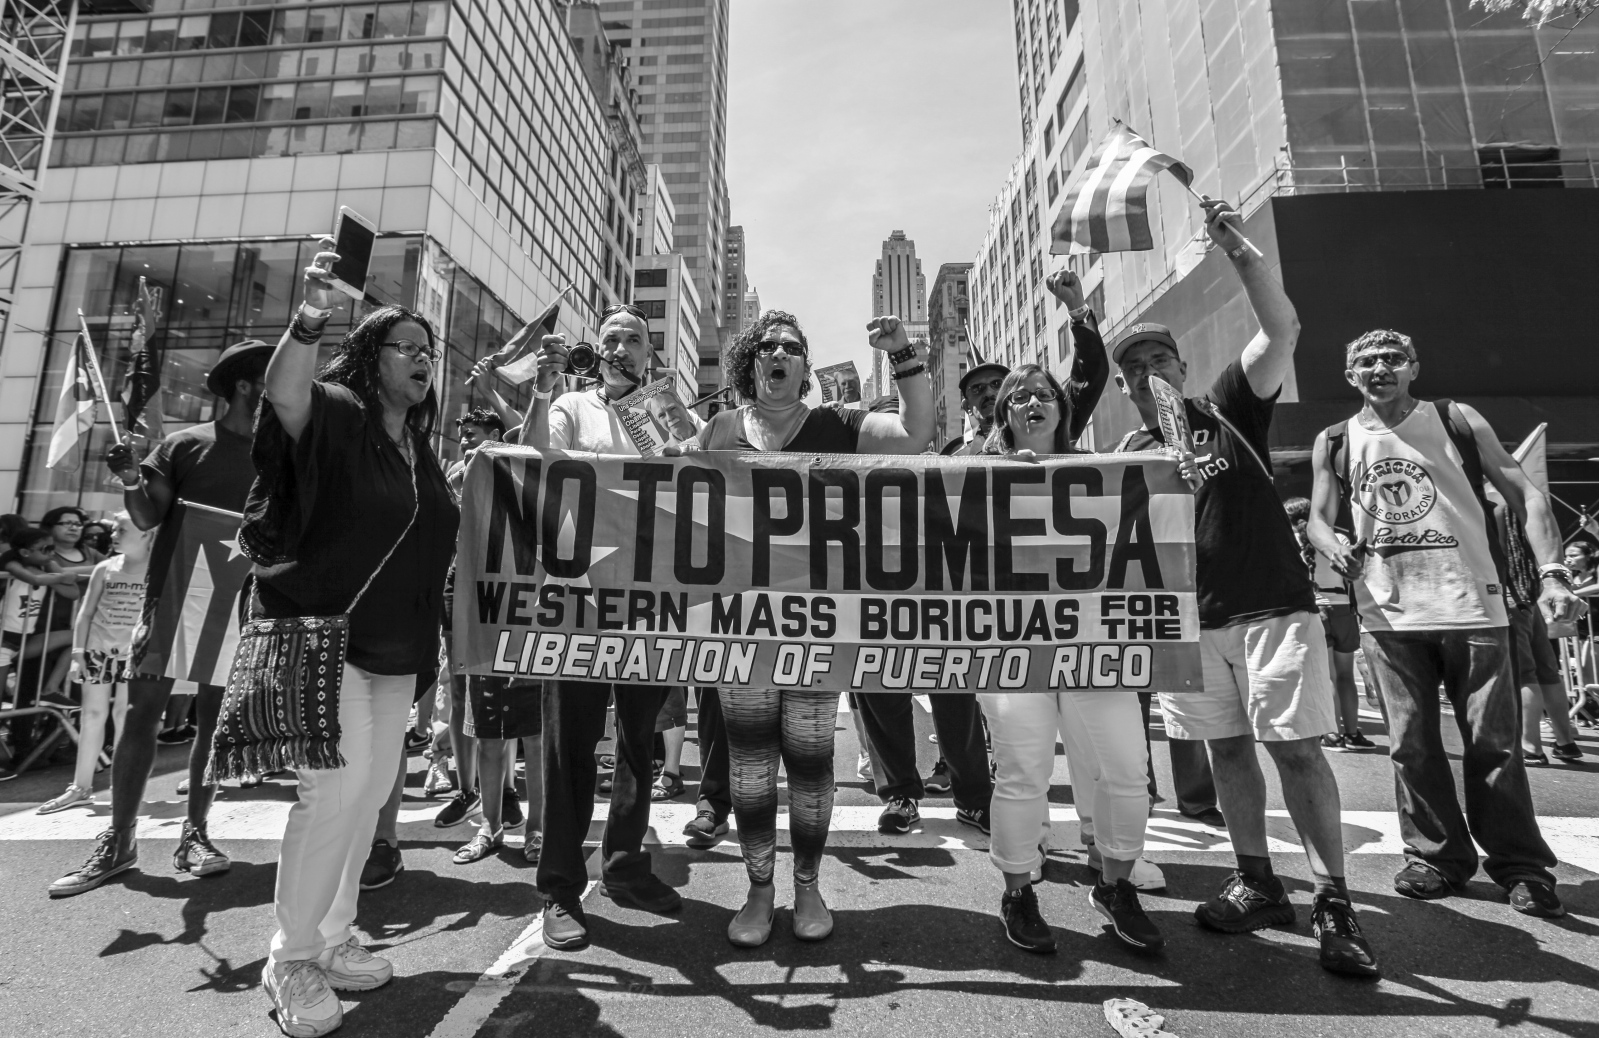 The parade against La Promesa